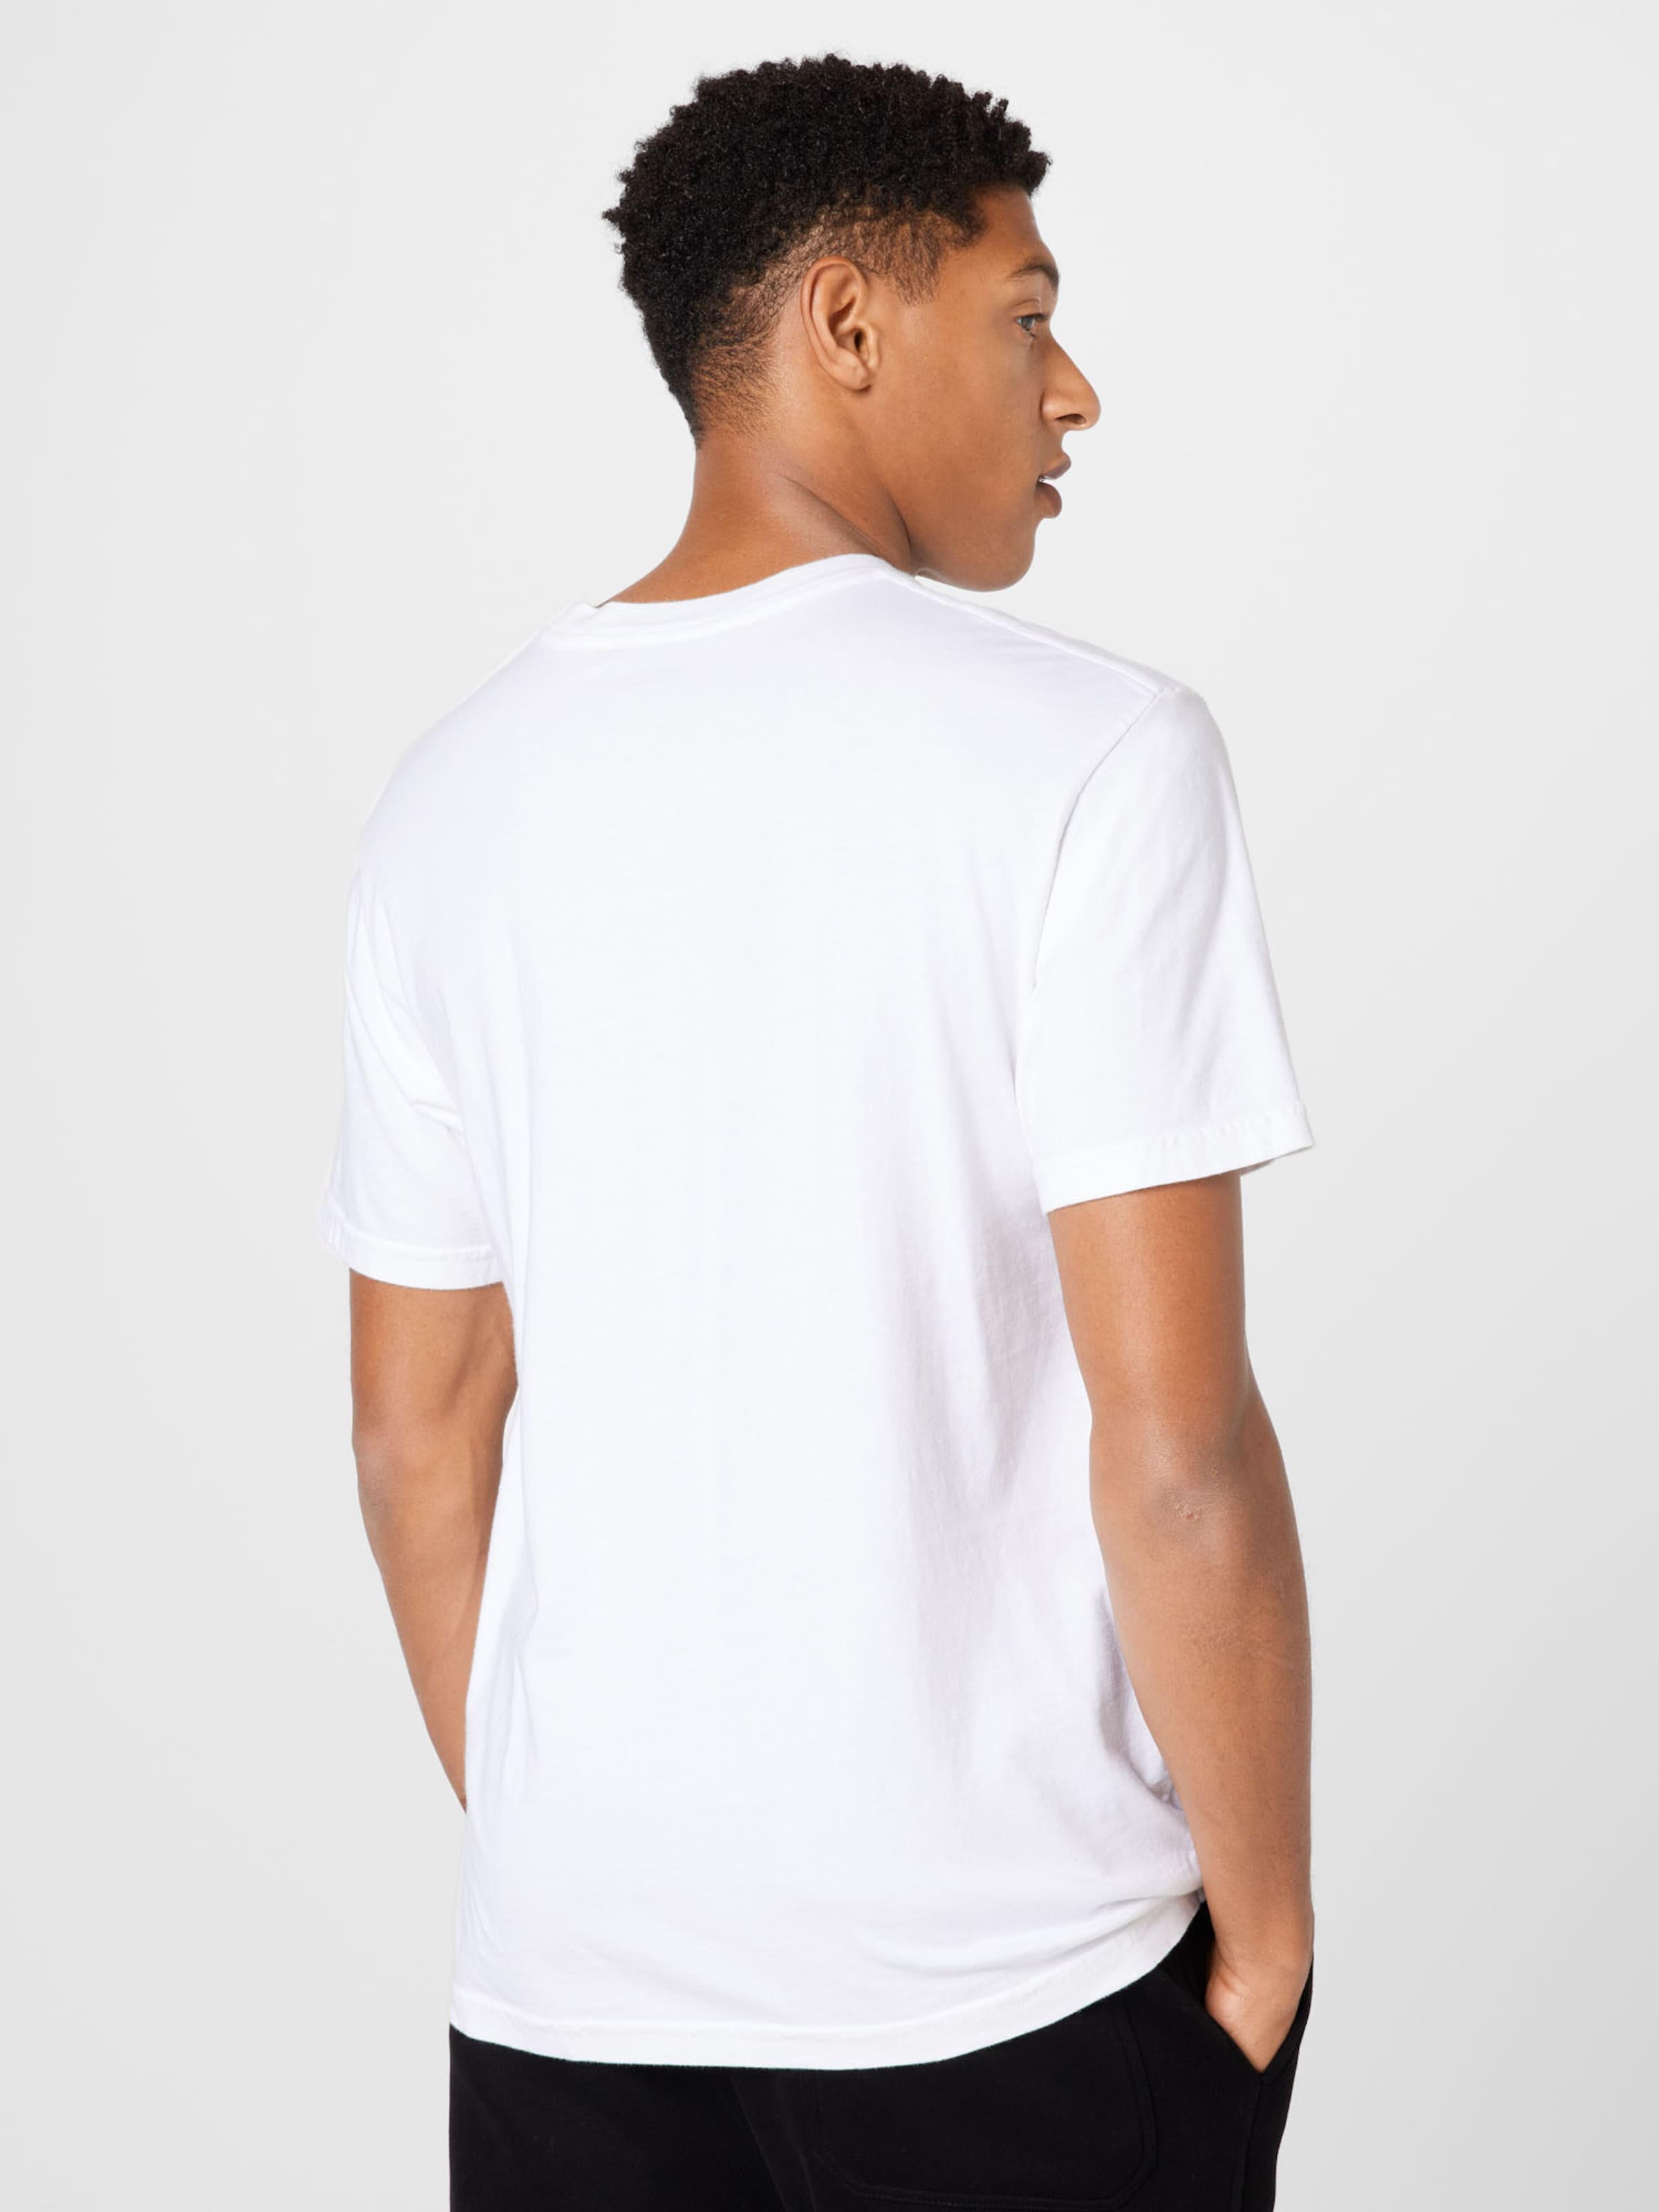 Männer Shirts Obey Shirt in Weiß - UM57324